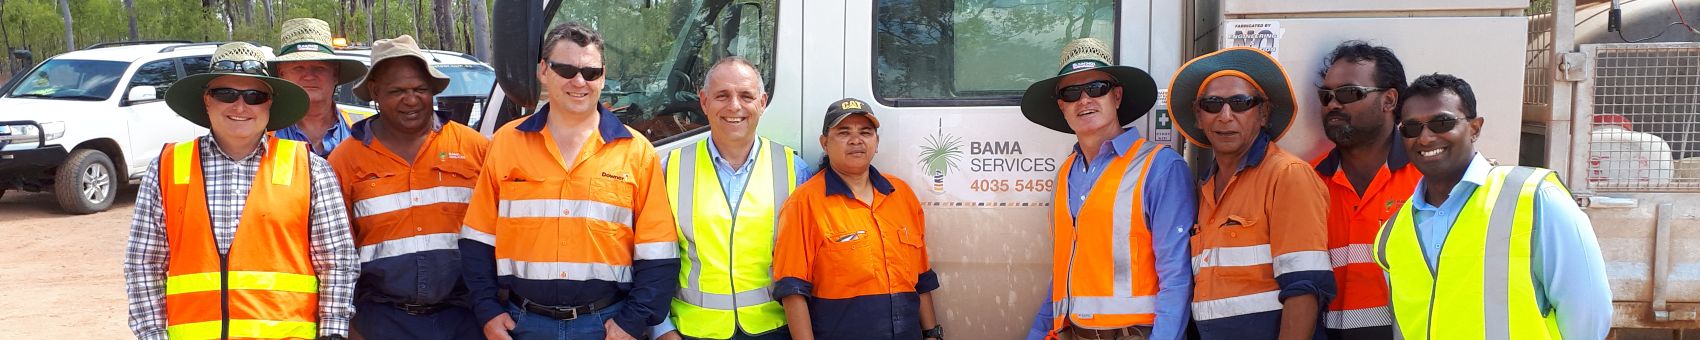 Bama Services